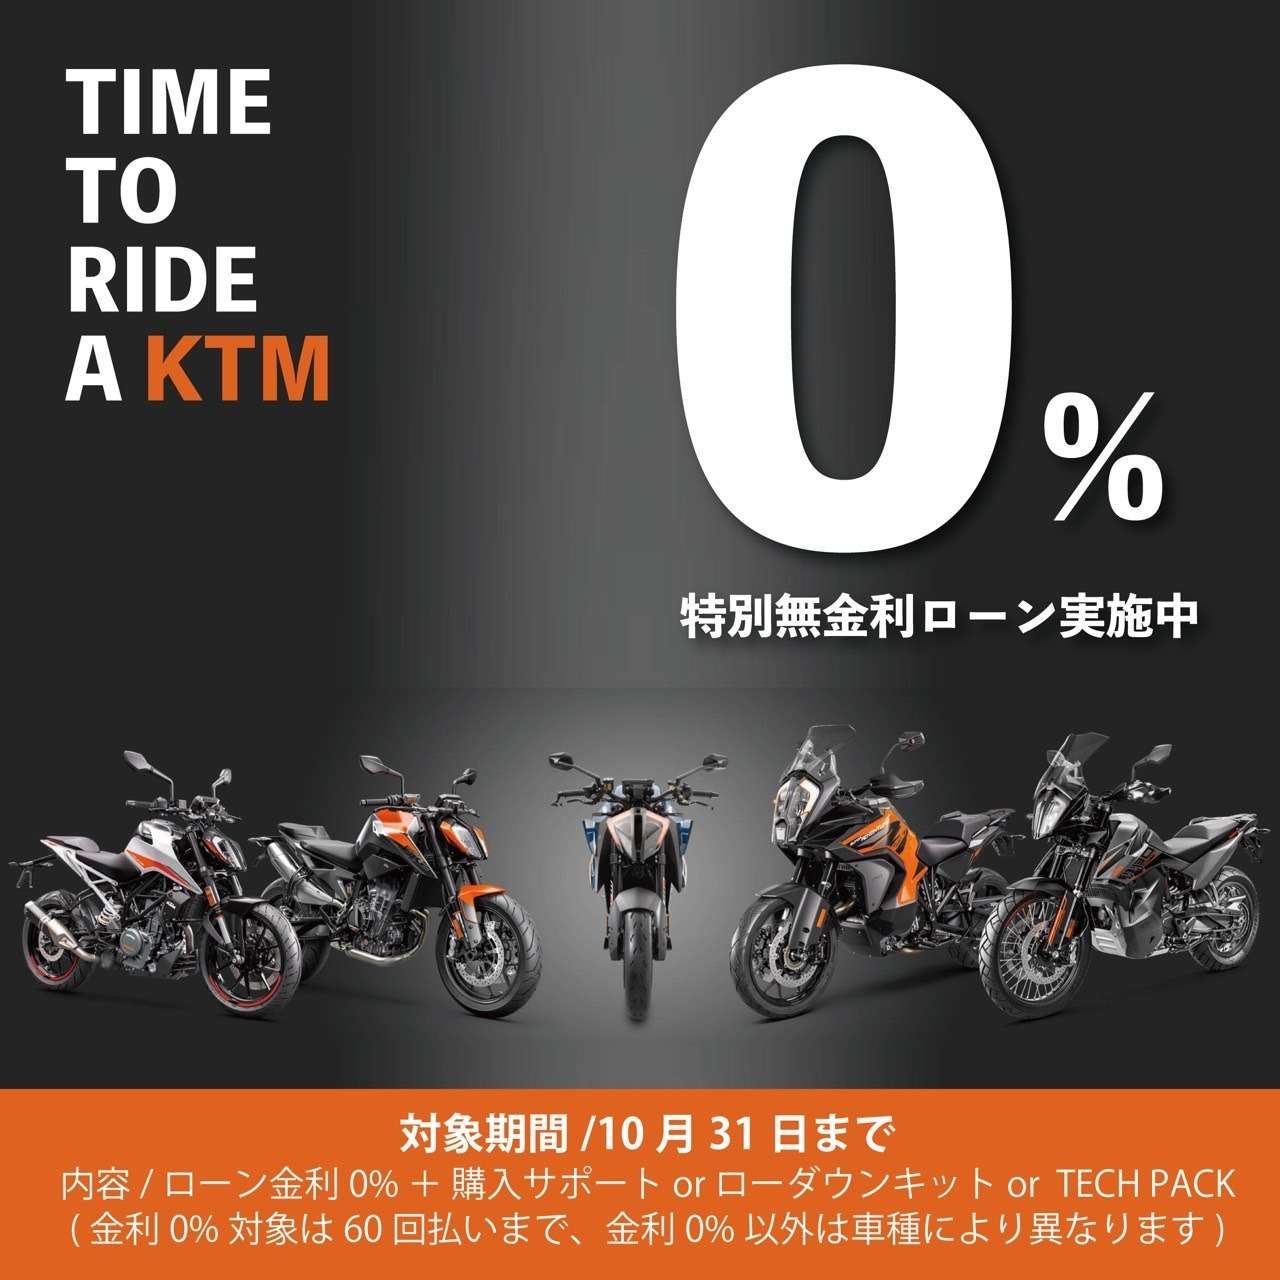 KTMとHUSQVARNA MOTORCYCLESは、ローン金利0%キャンペーン開催中！✨